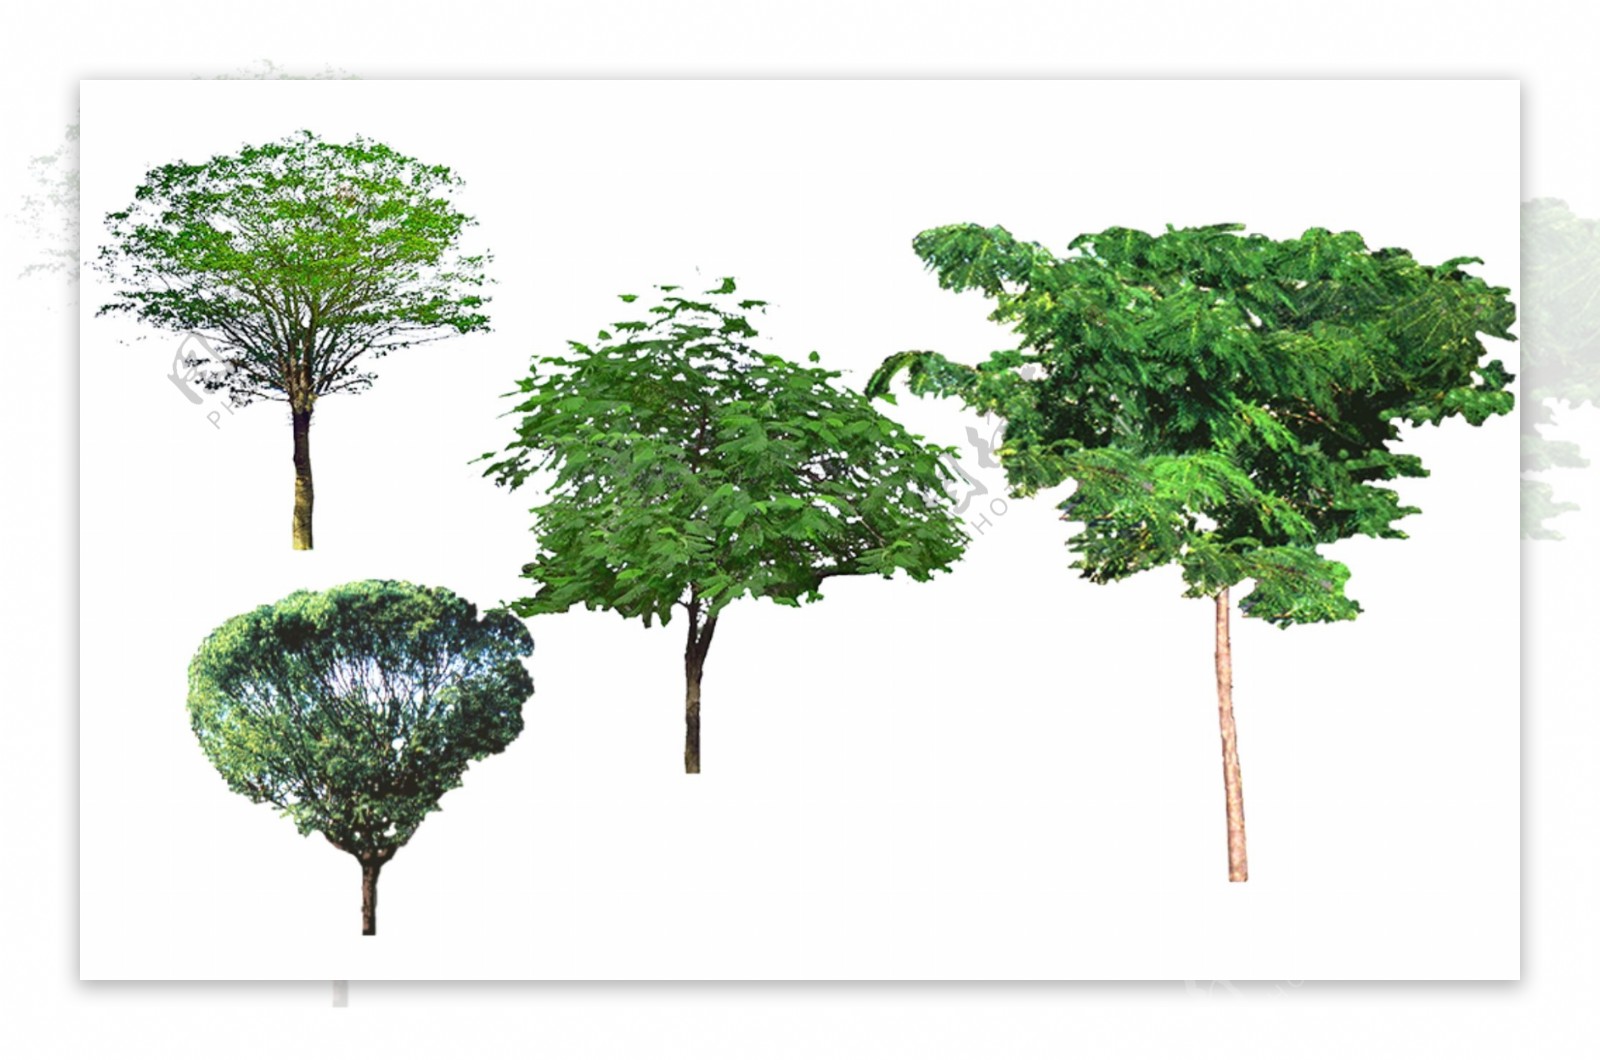 3D室外效果图环境素材绿植树木单株